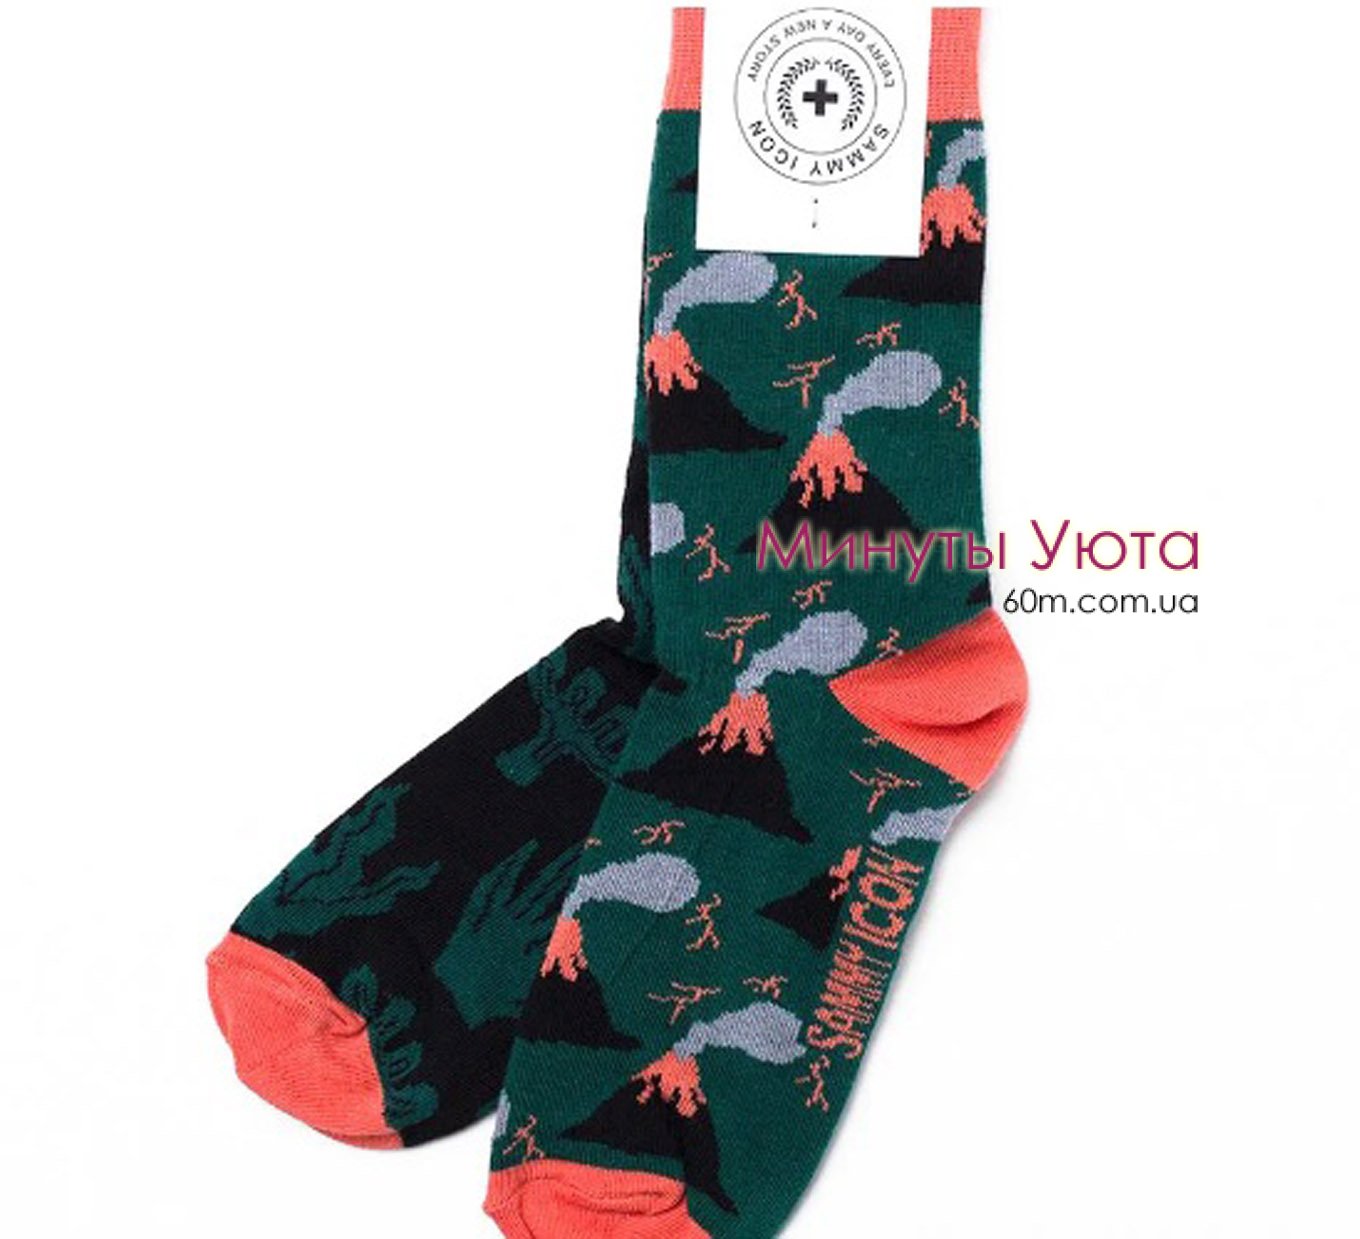 Мужские разноцветные носки с принтом вулкана Sammy Icon